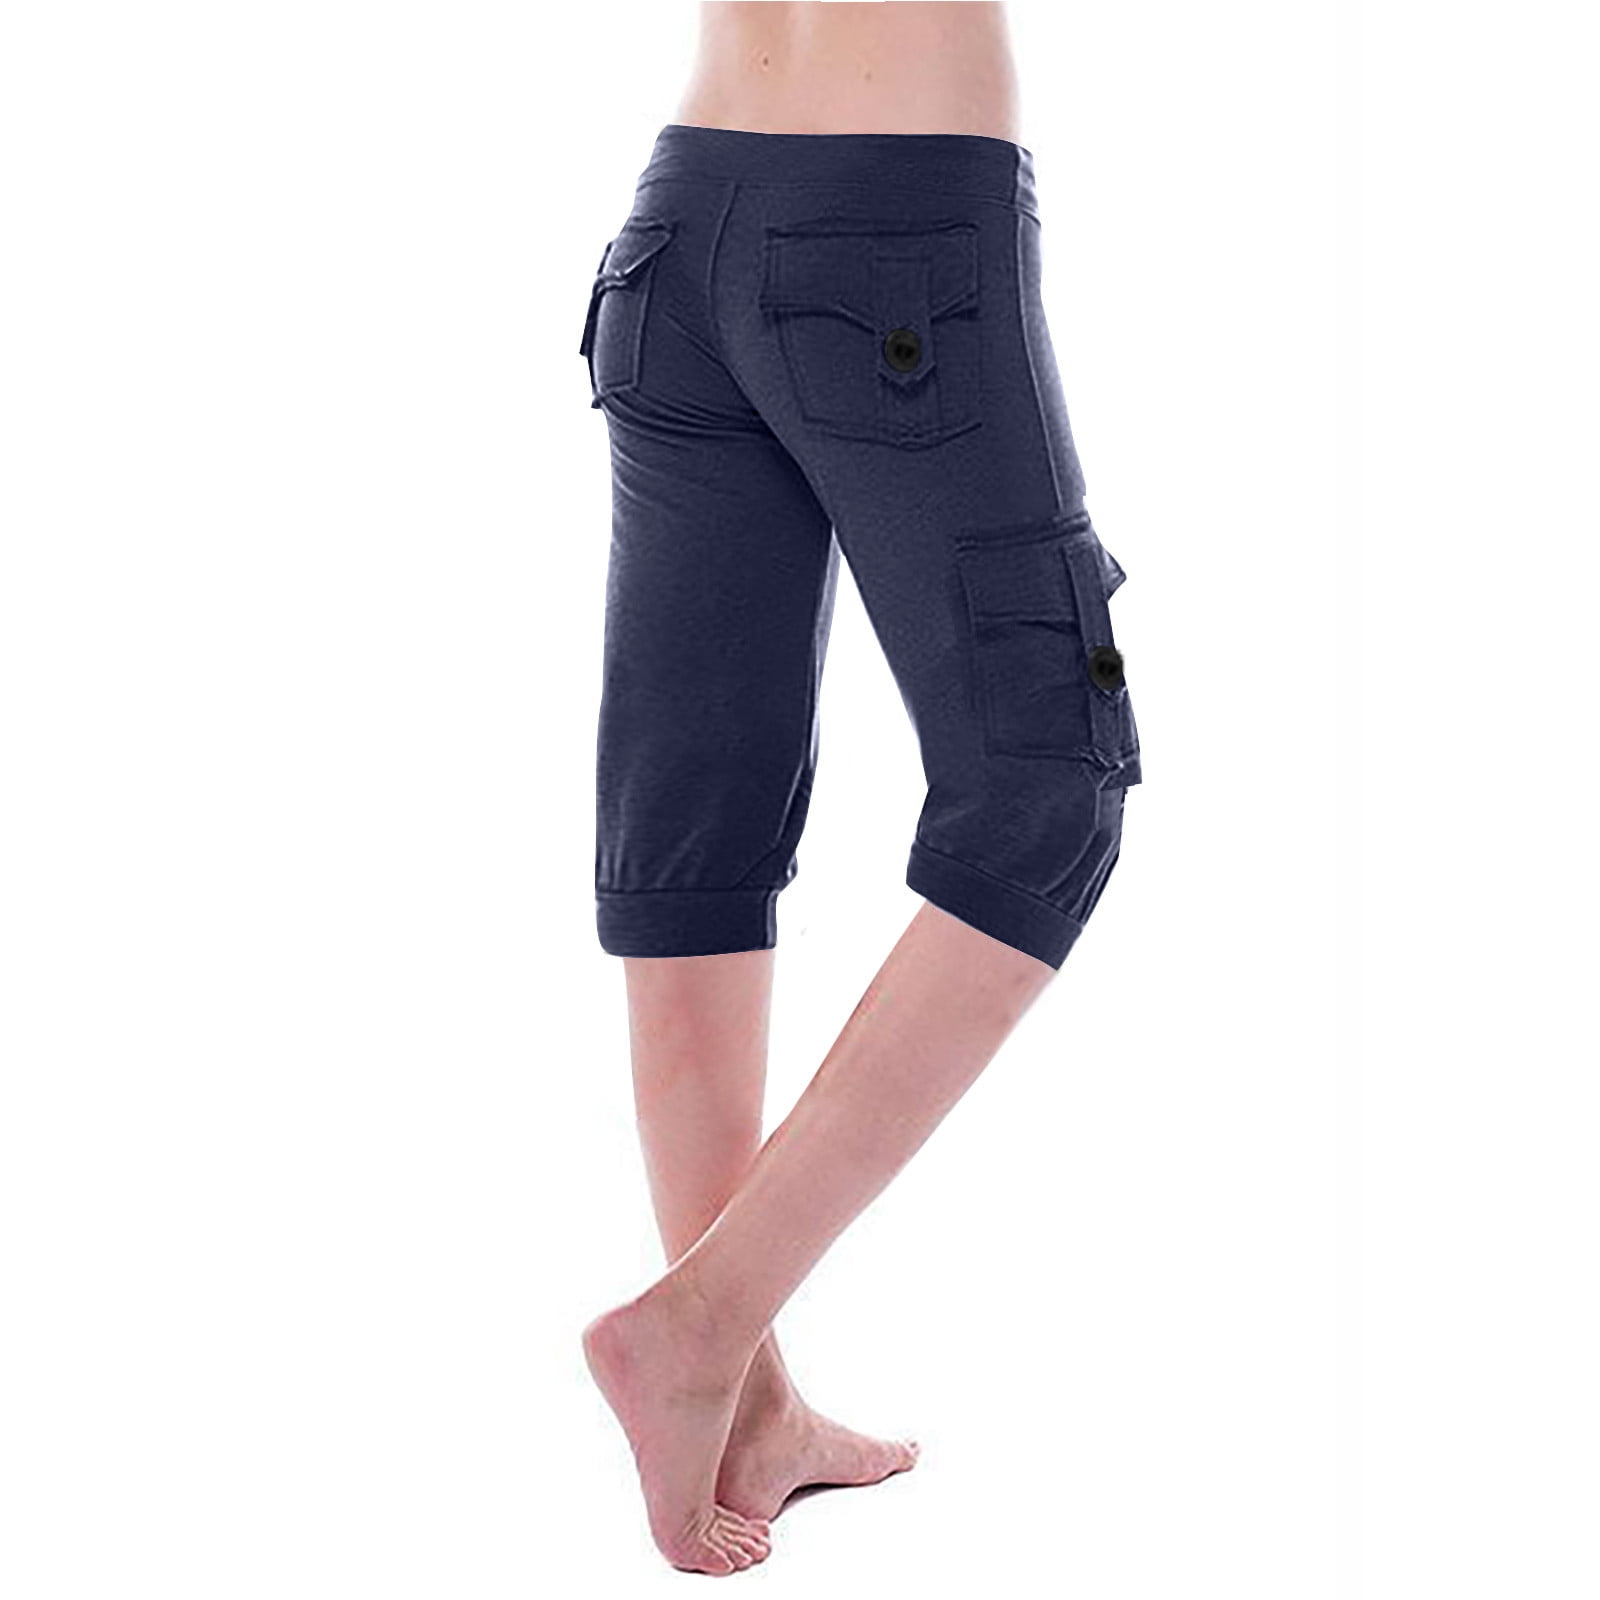 AherBiu Yoga Pants for Women Knee Length High Waisted Stretchy Comfy ...